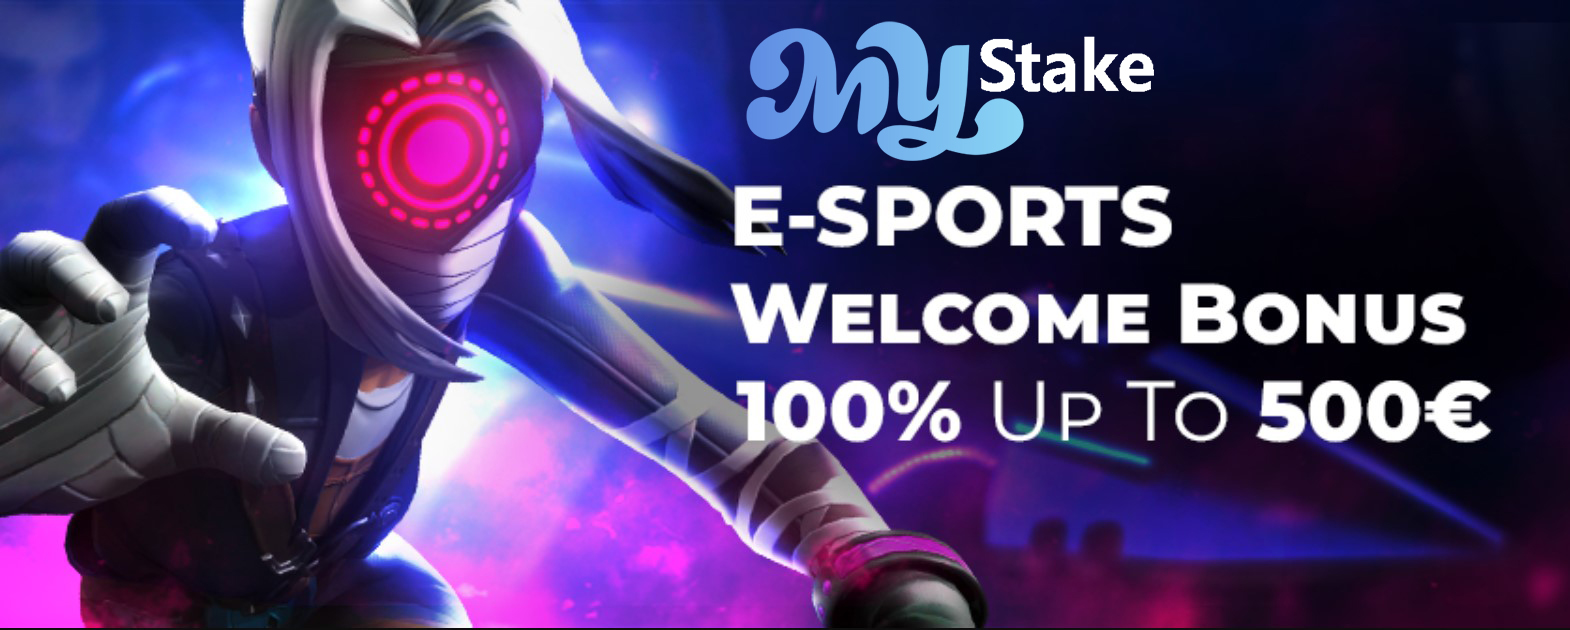 eSport Welcome Bonus 100% Hangtod sa 500 €